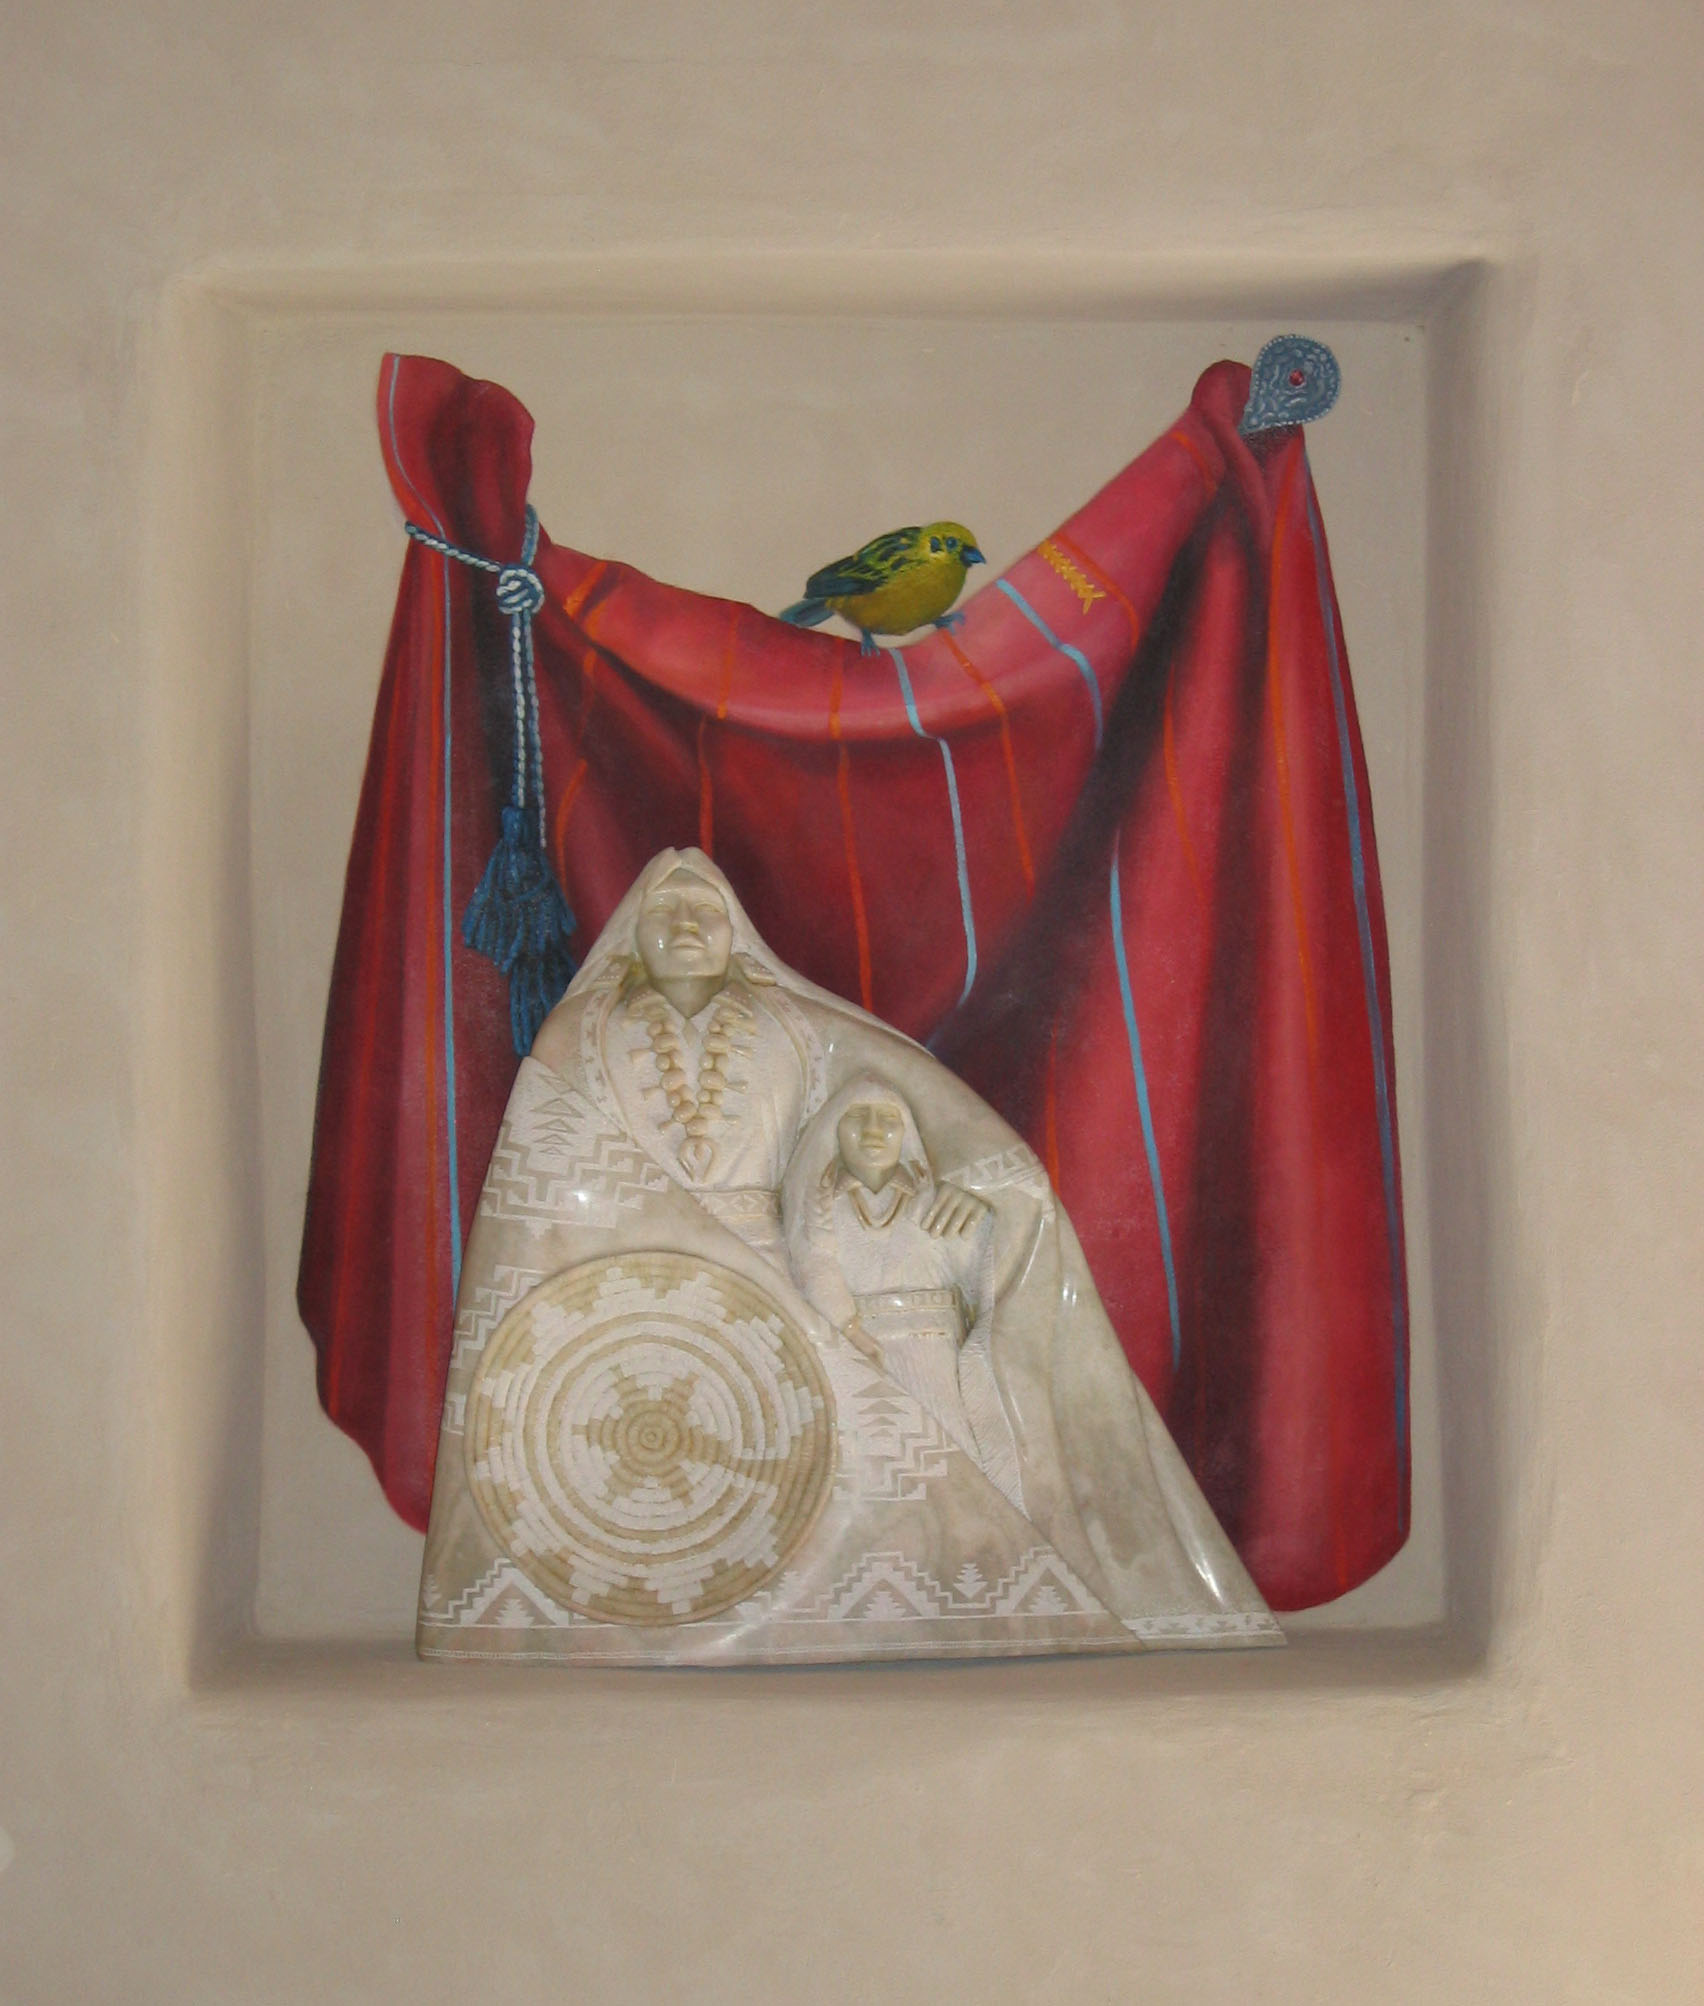 Trompe l'oeil cloth with bird in niche